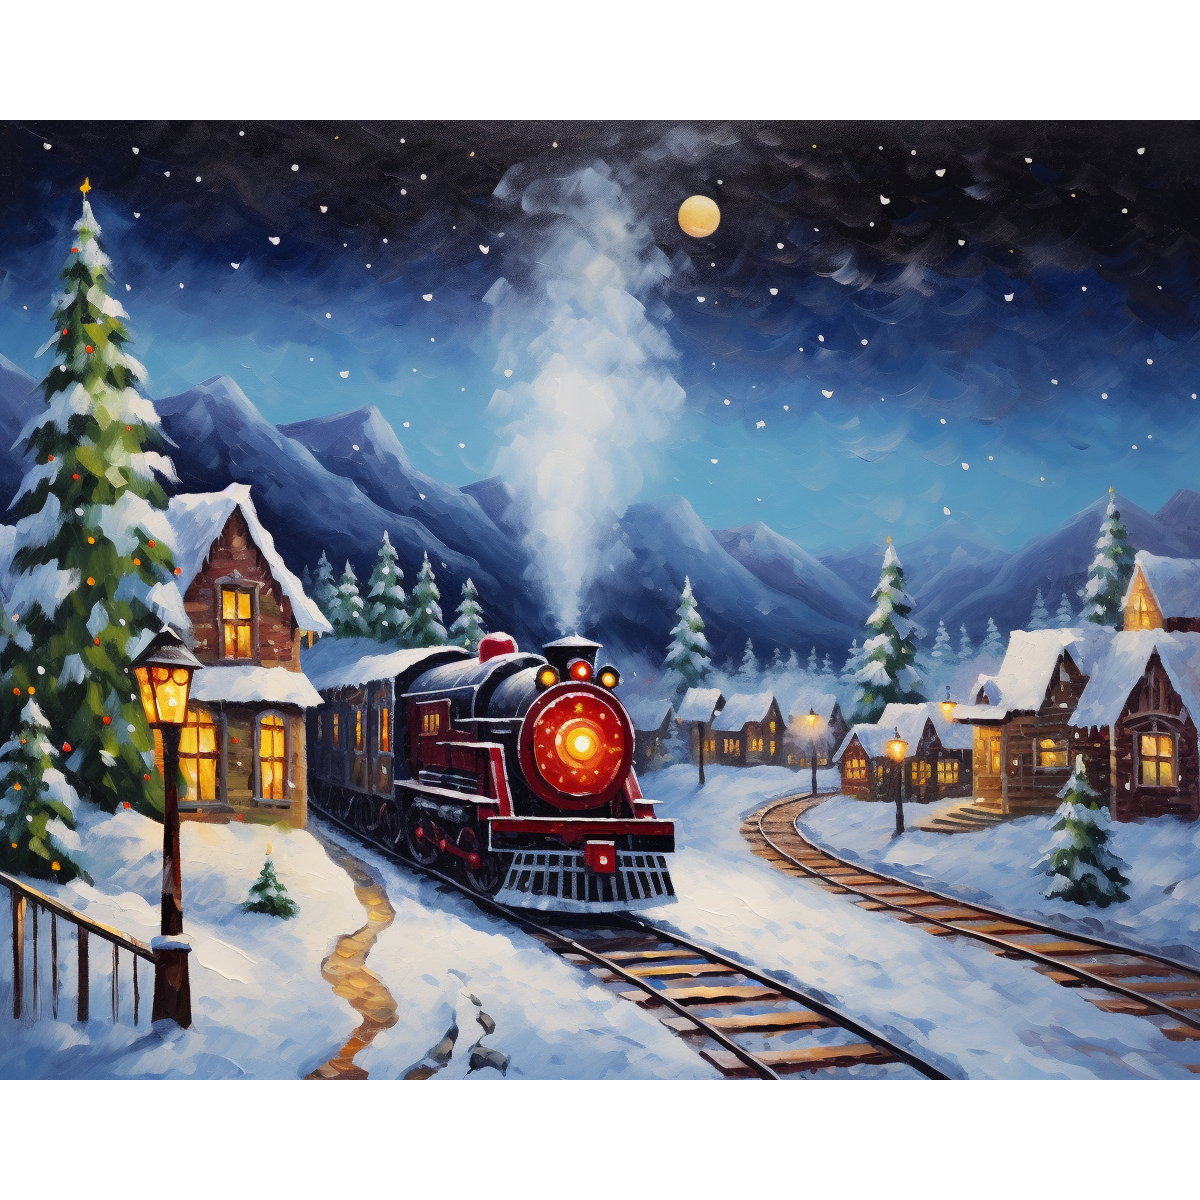 Snow-Clad Village Train